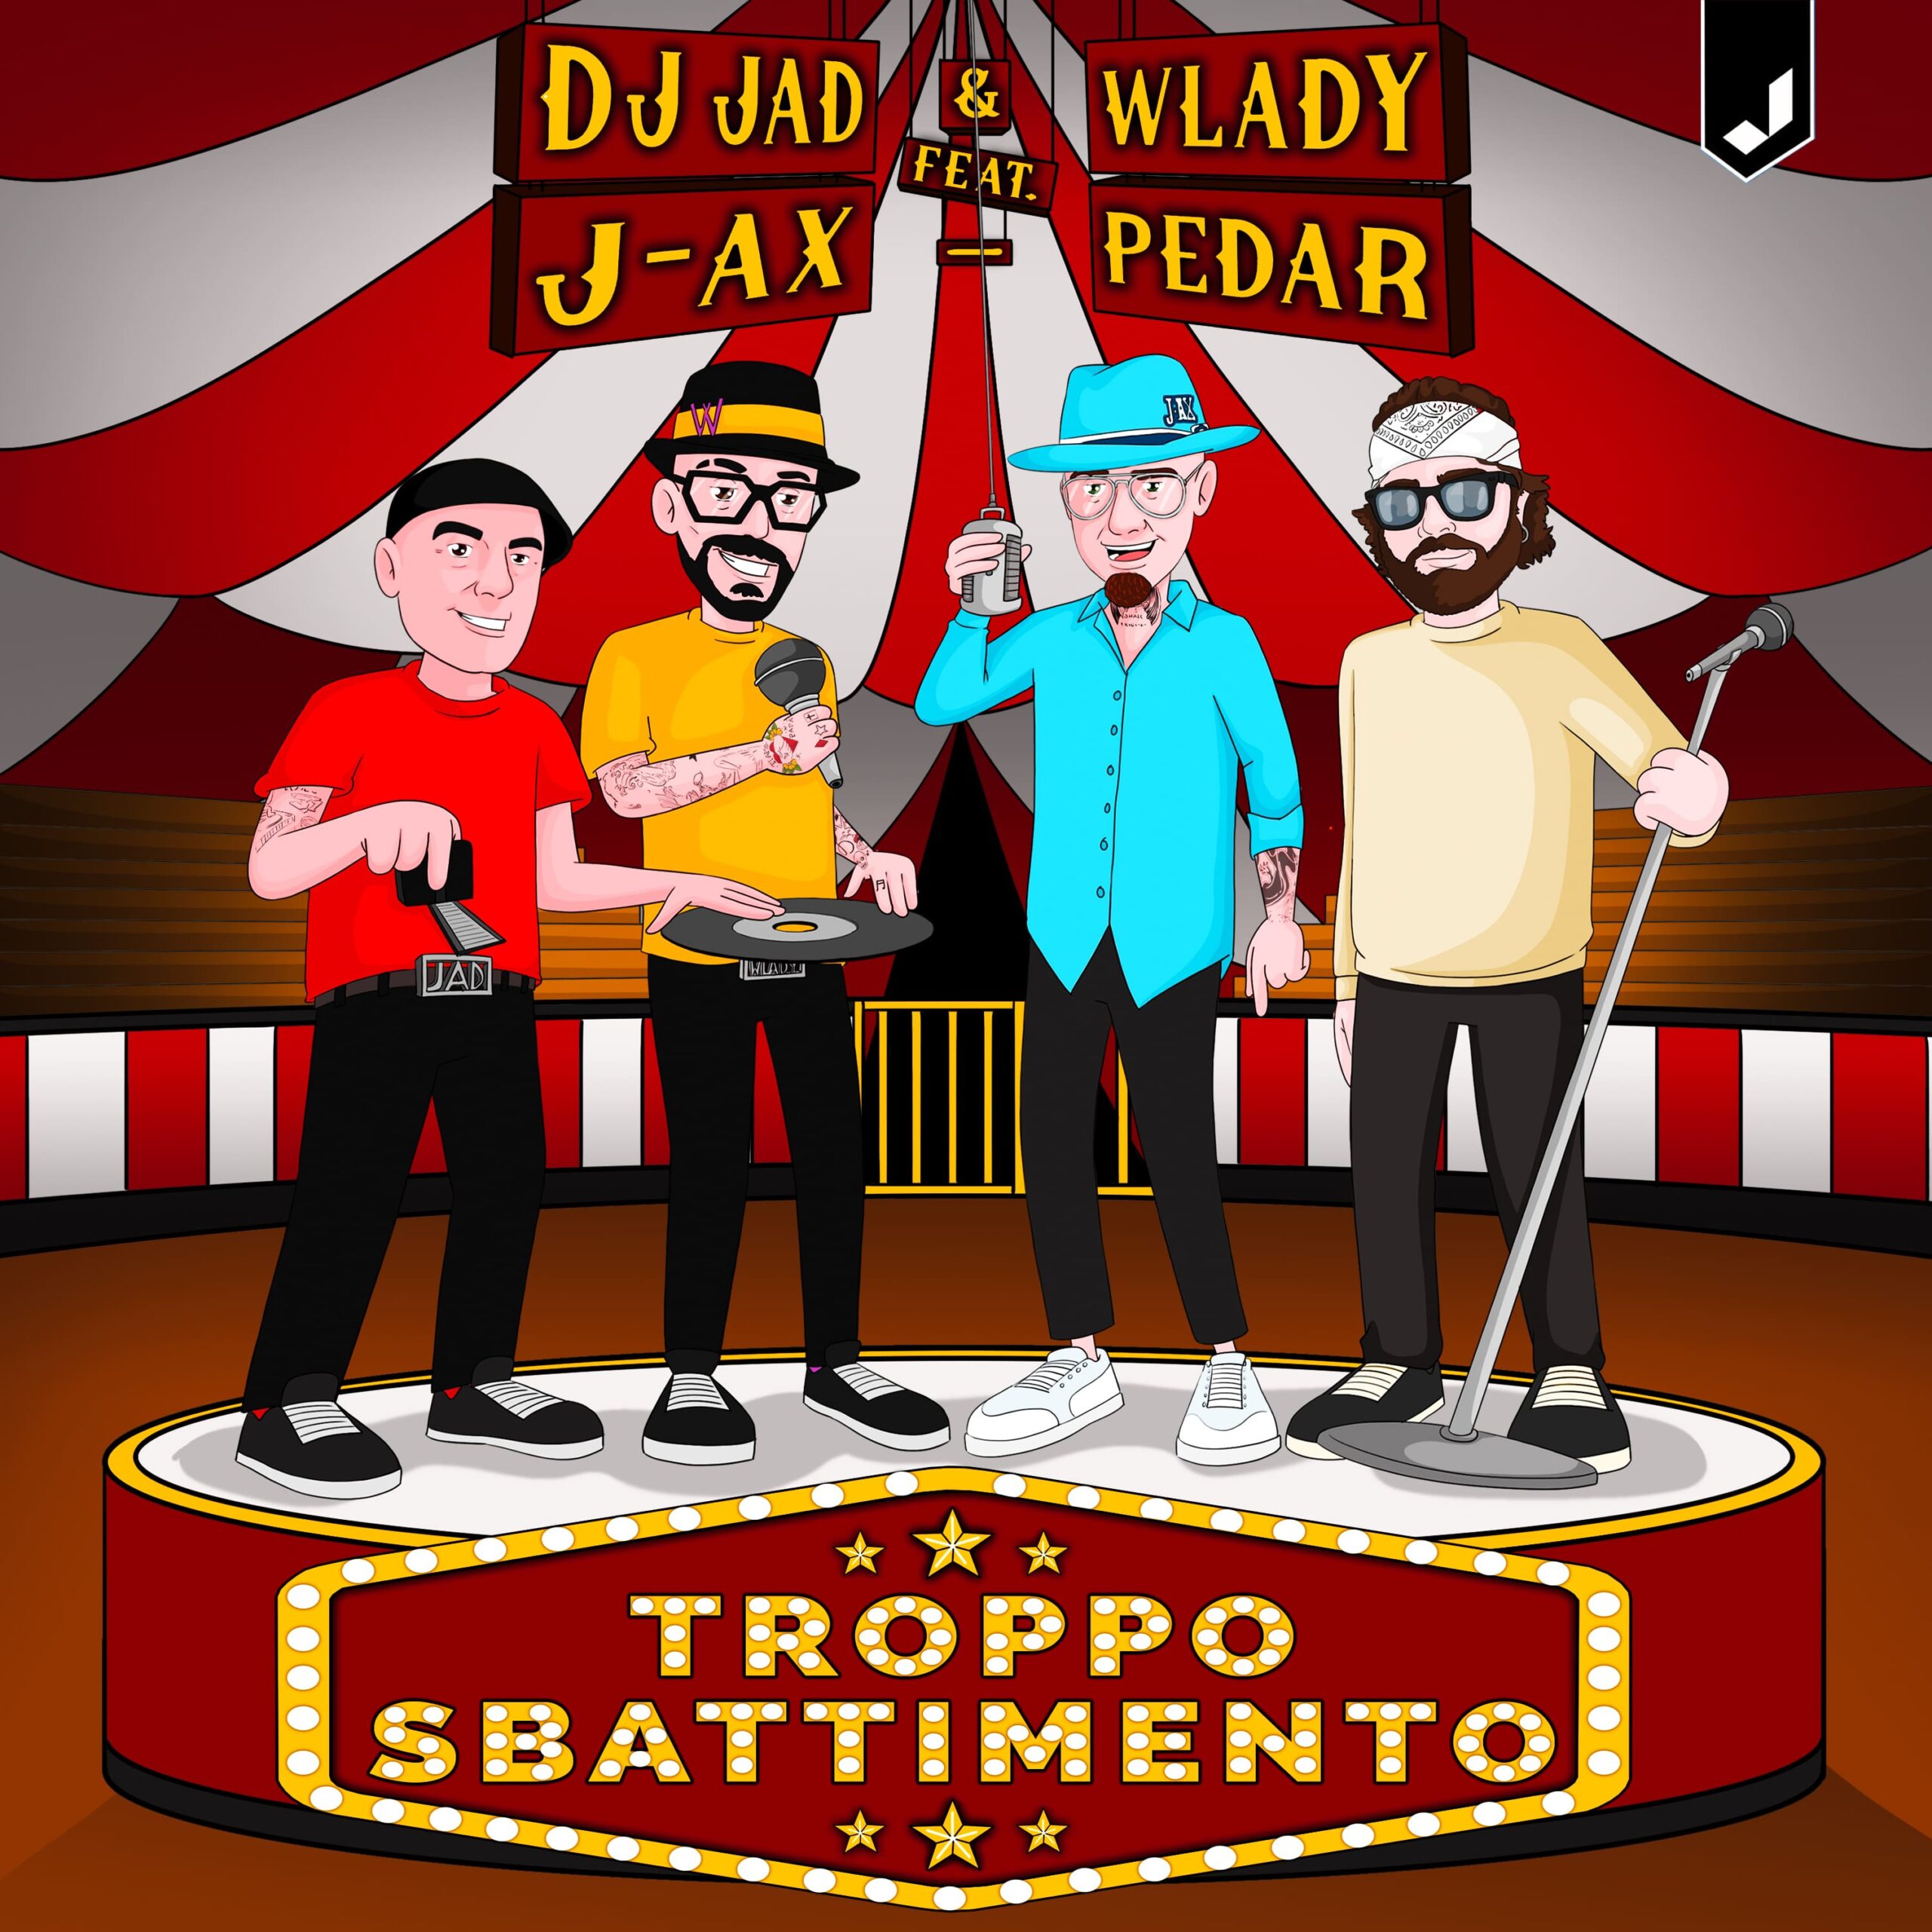 DJ Jad & Wlady feat. J-Ax e Pedar in “Troppo Sbattimento”